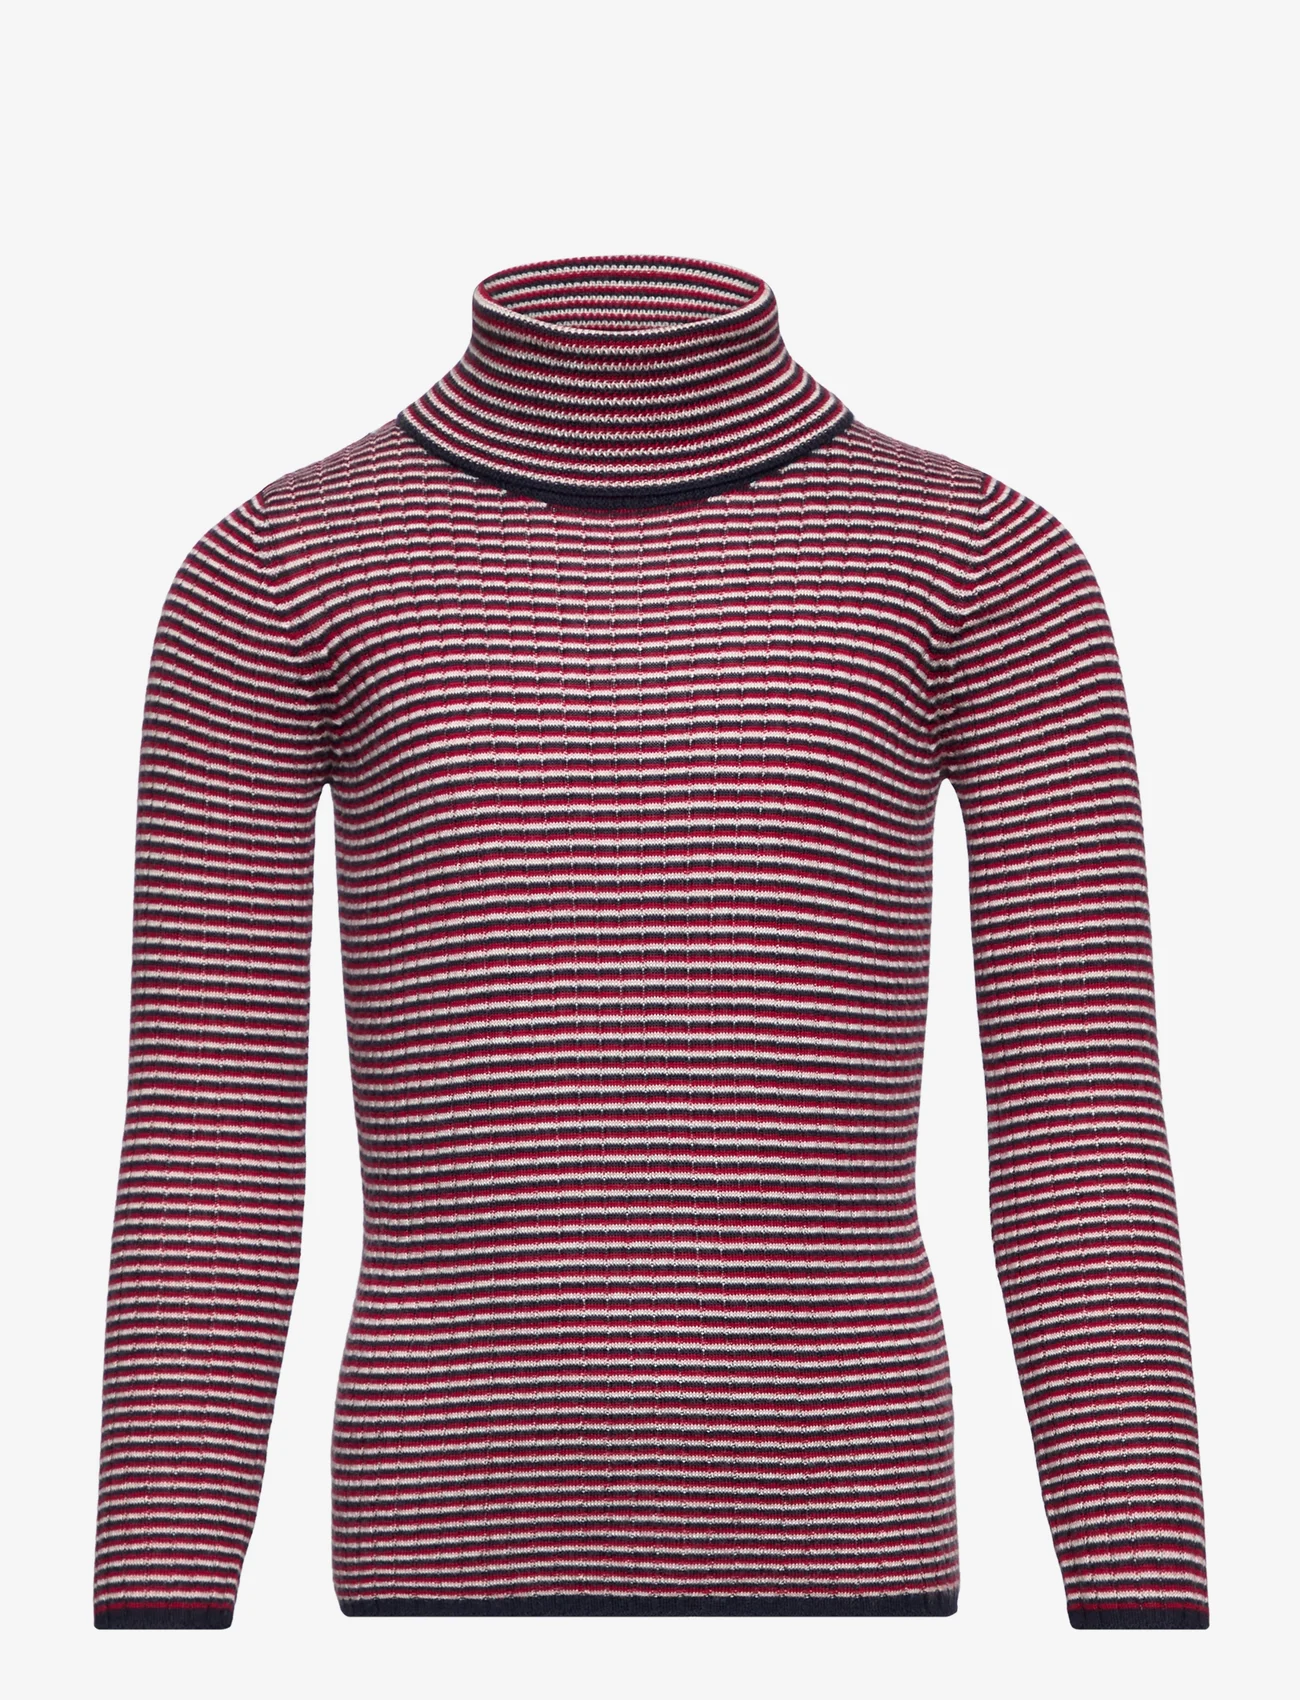 FUB - Rollneck Blouse - megztiniai su aukšta apykakle - ecru/dark navy/bright red - 0